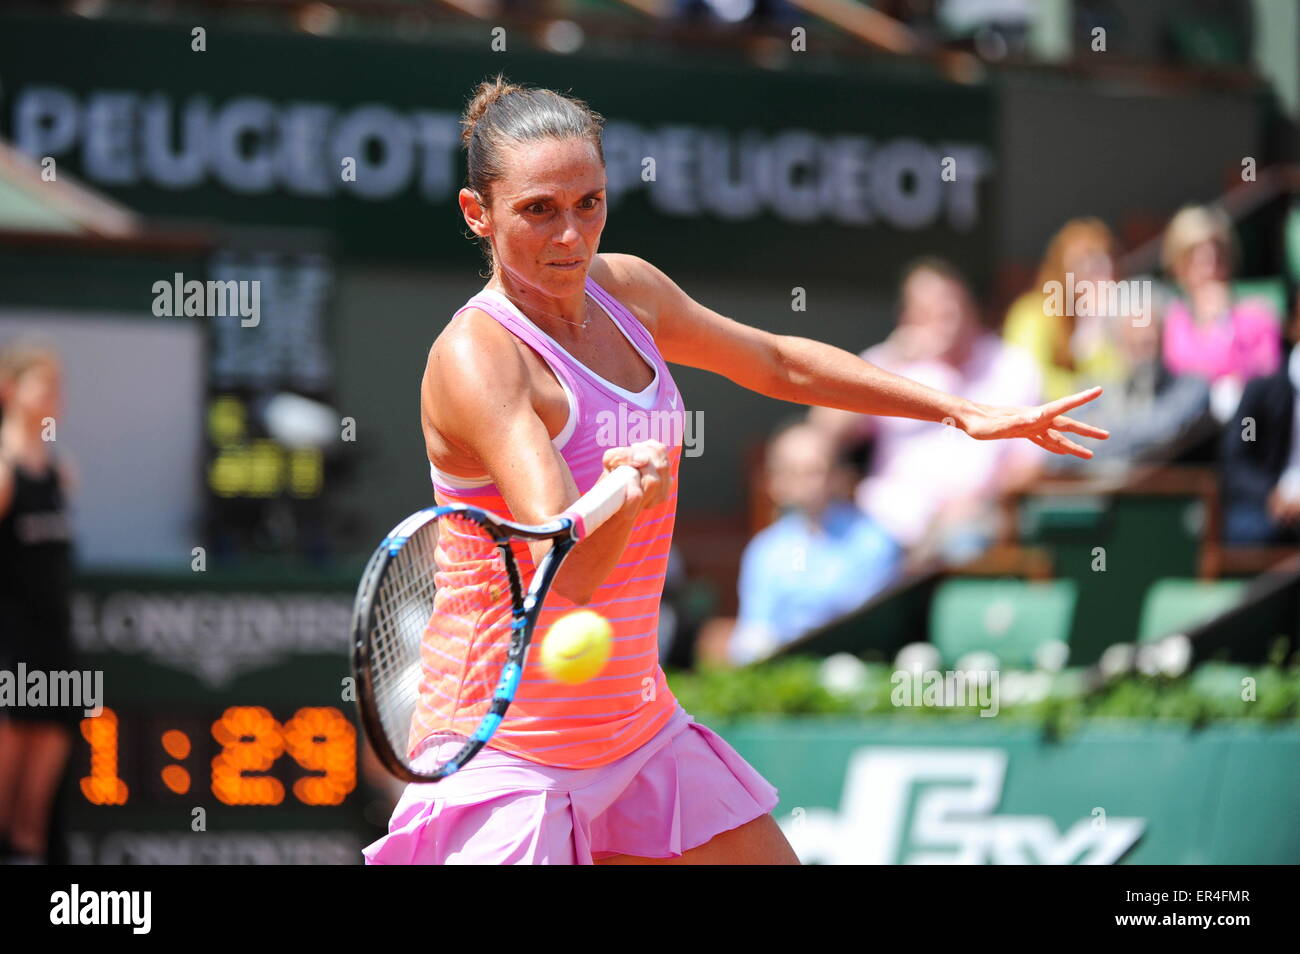 Roberta VINCI - 25.05.2015 - Jour 2 - Roland Garros 2015.Photo: Nolwenn Le Gouic/Icon Sport Stockfoto